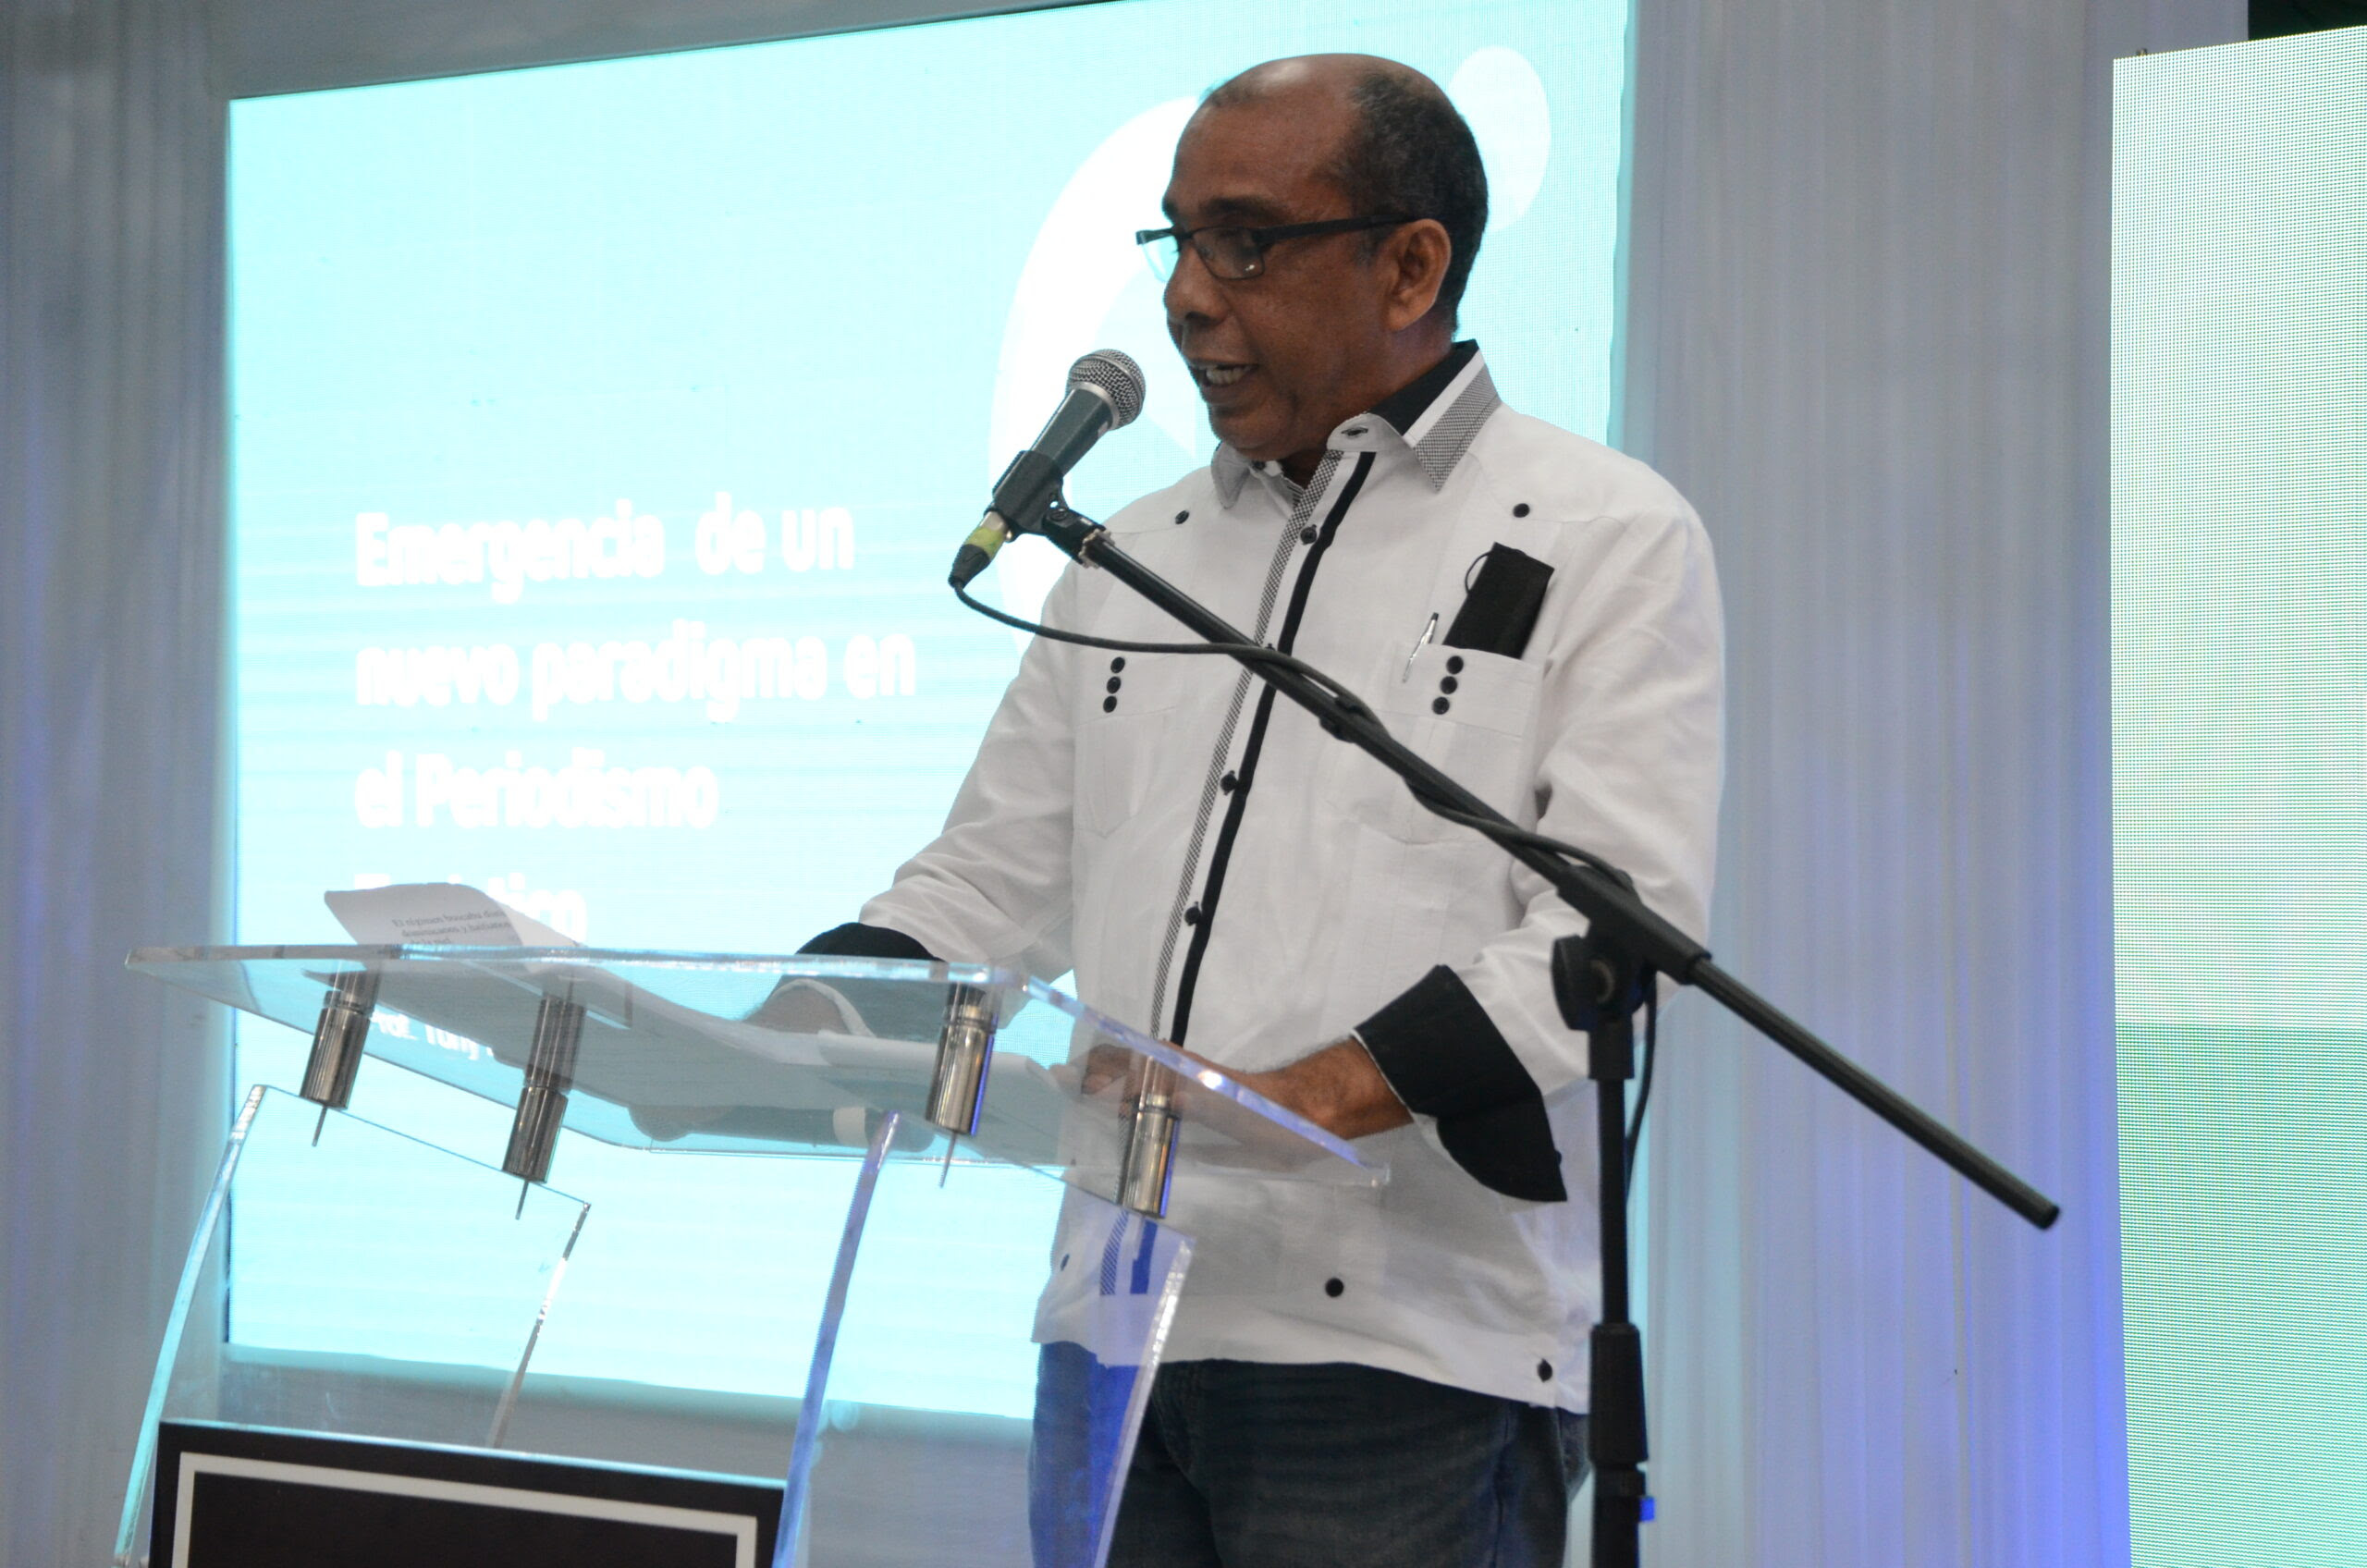 Adompretur ofrece conferencia “Emergencia de un nuevo paradigma en el periodismo turístico”